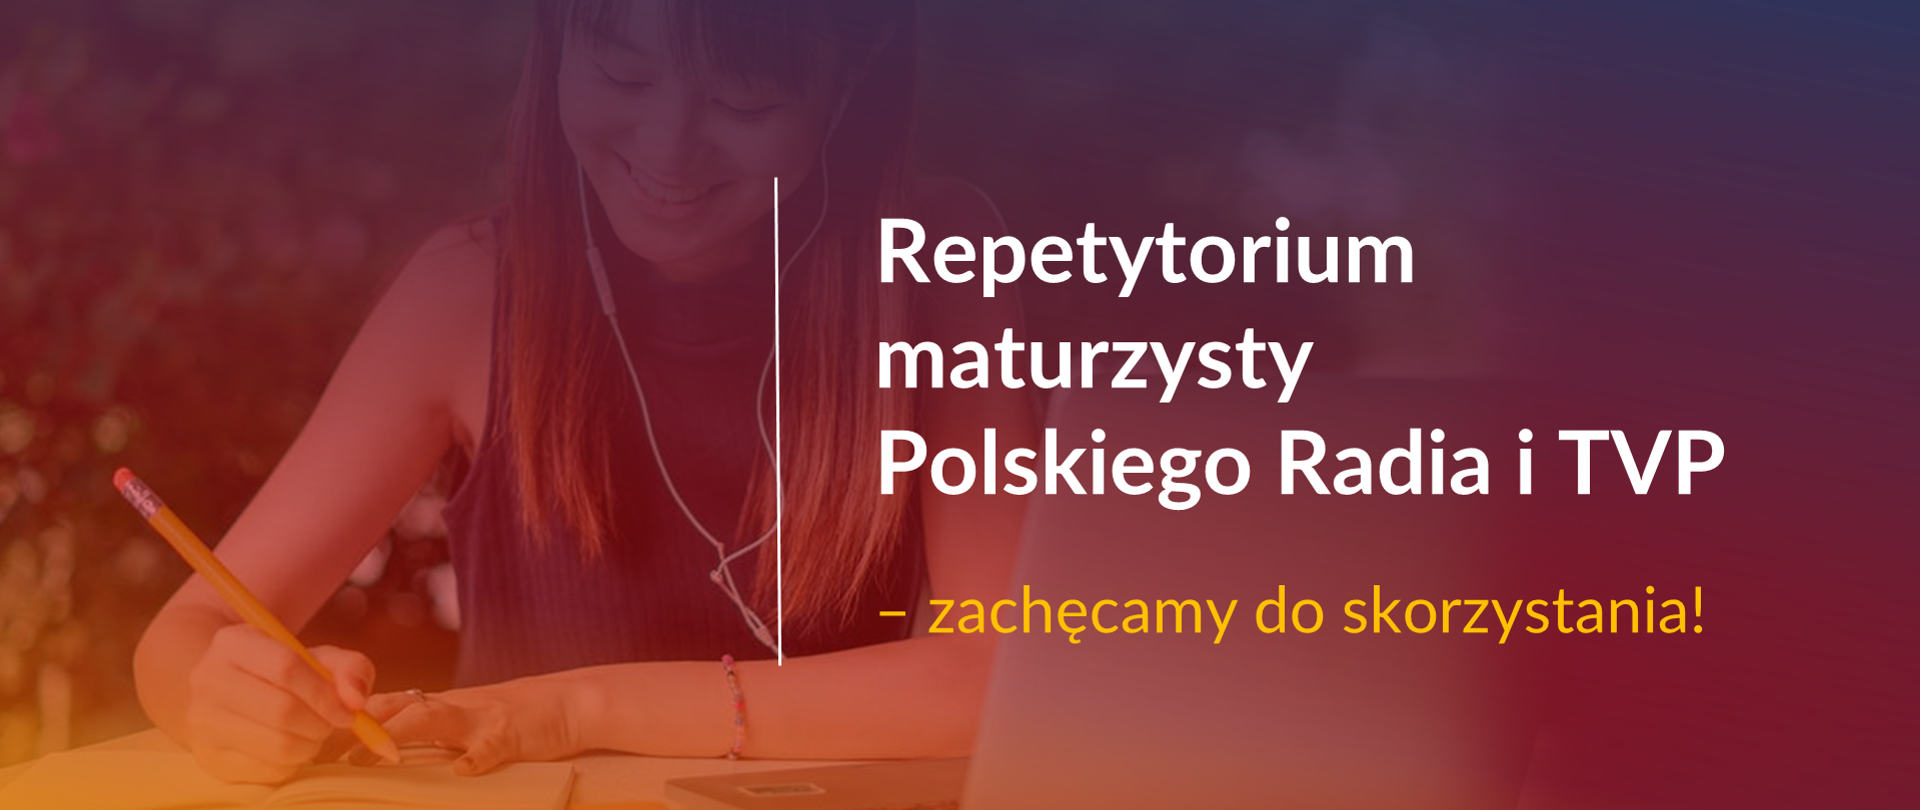 Grafika z tekstem: "Repetytorium maturzysty Polskiego Radia i TVP – zachęcamy do skorzystania!"